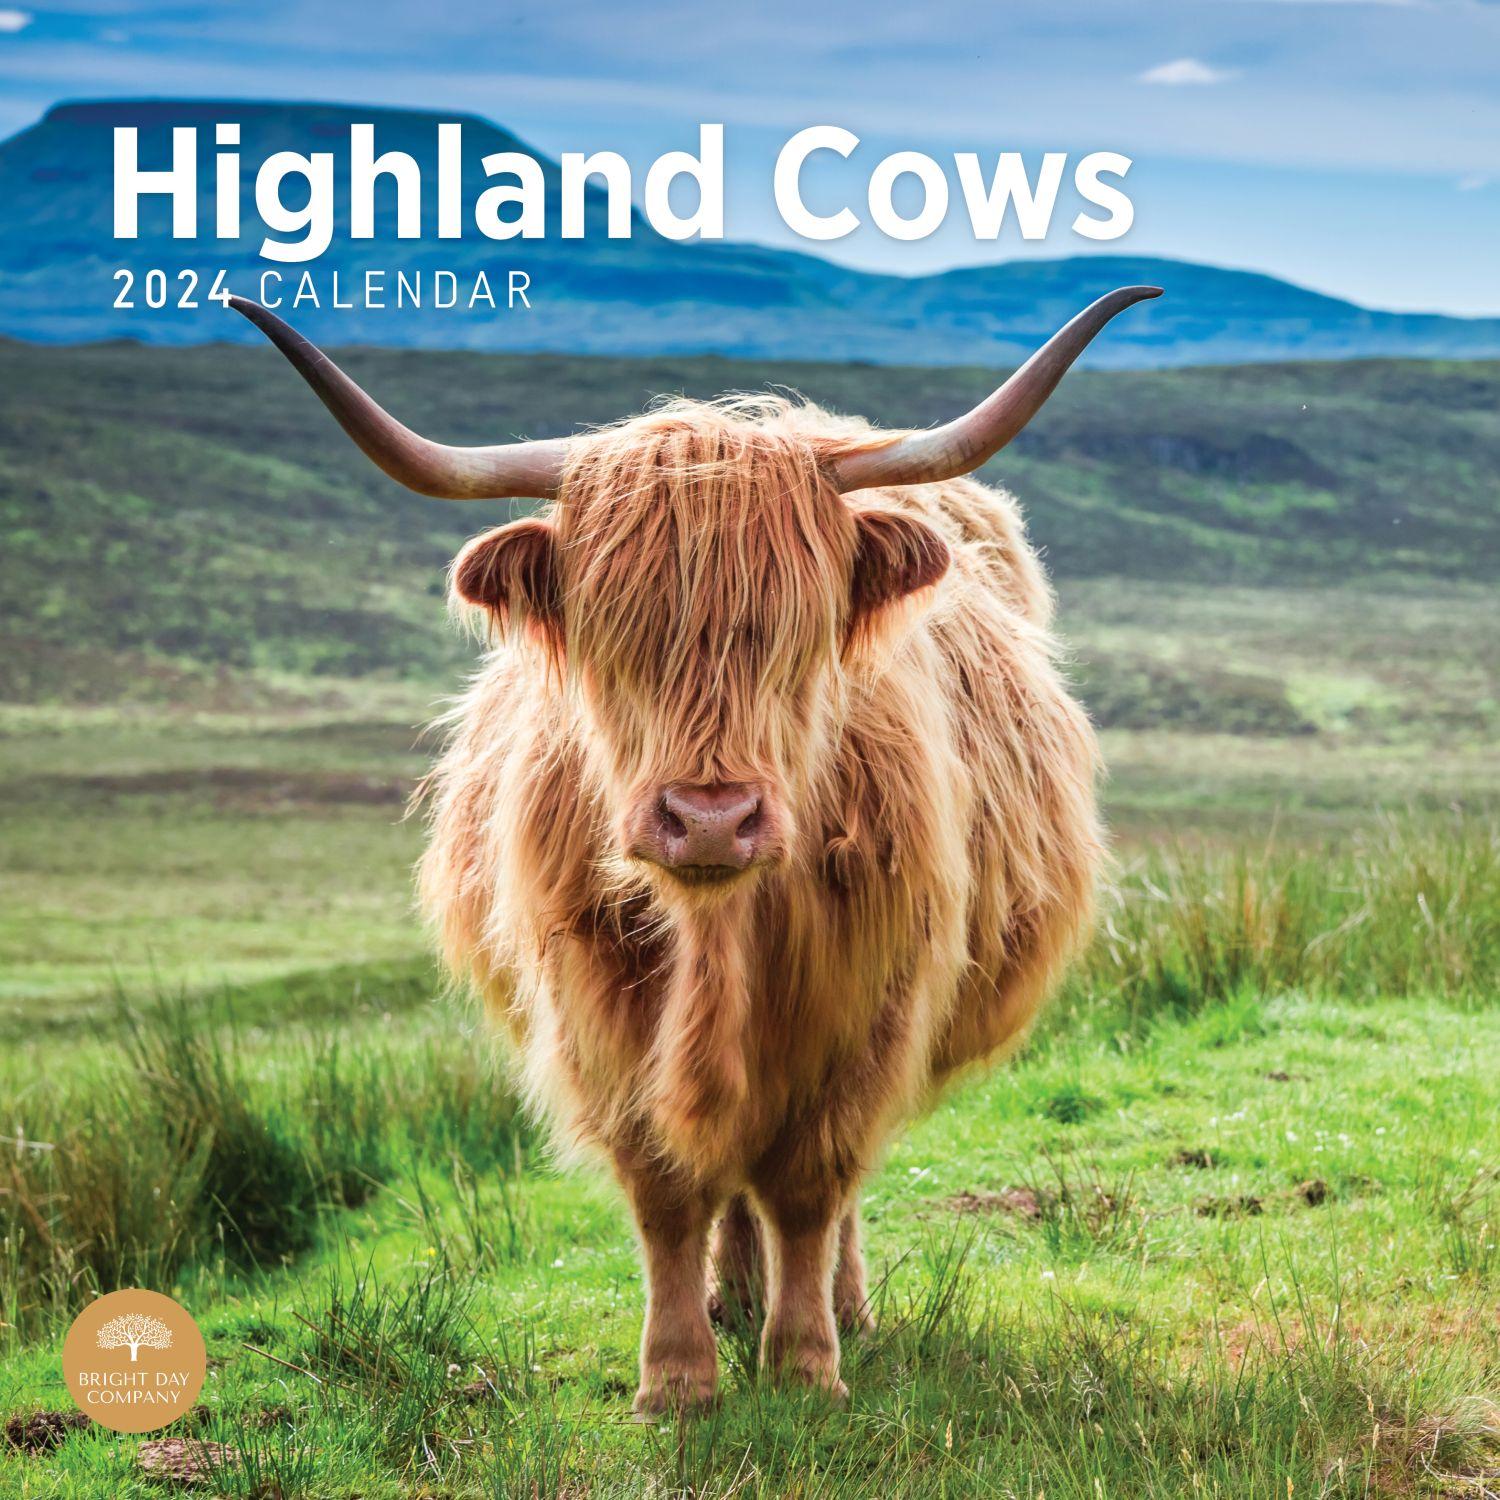 Highland Cows 2024 Wall Calendar Calendars com